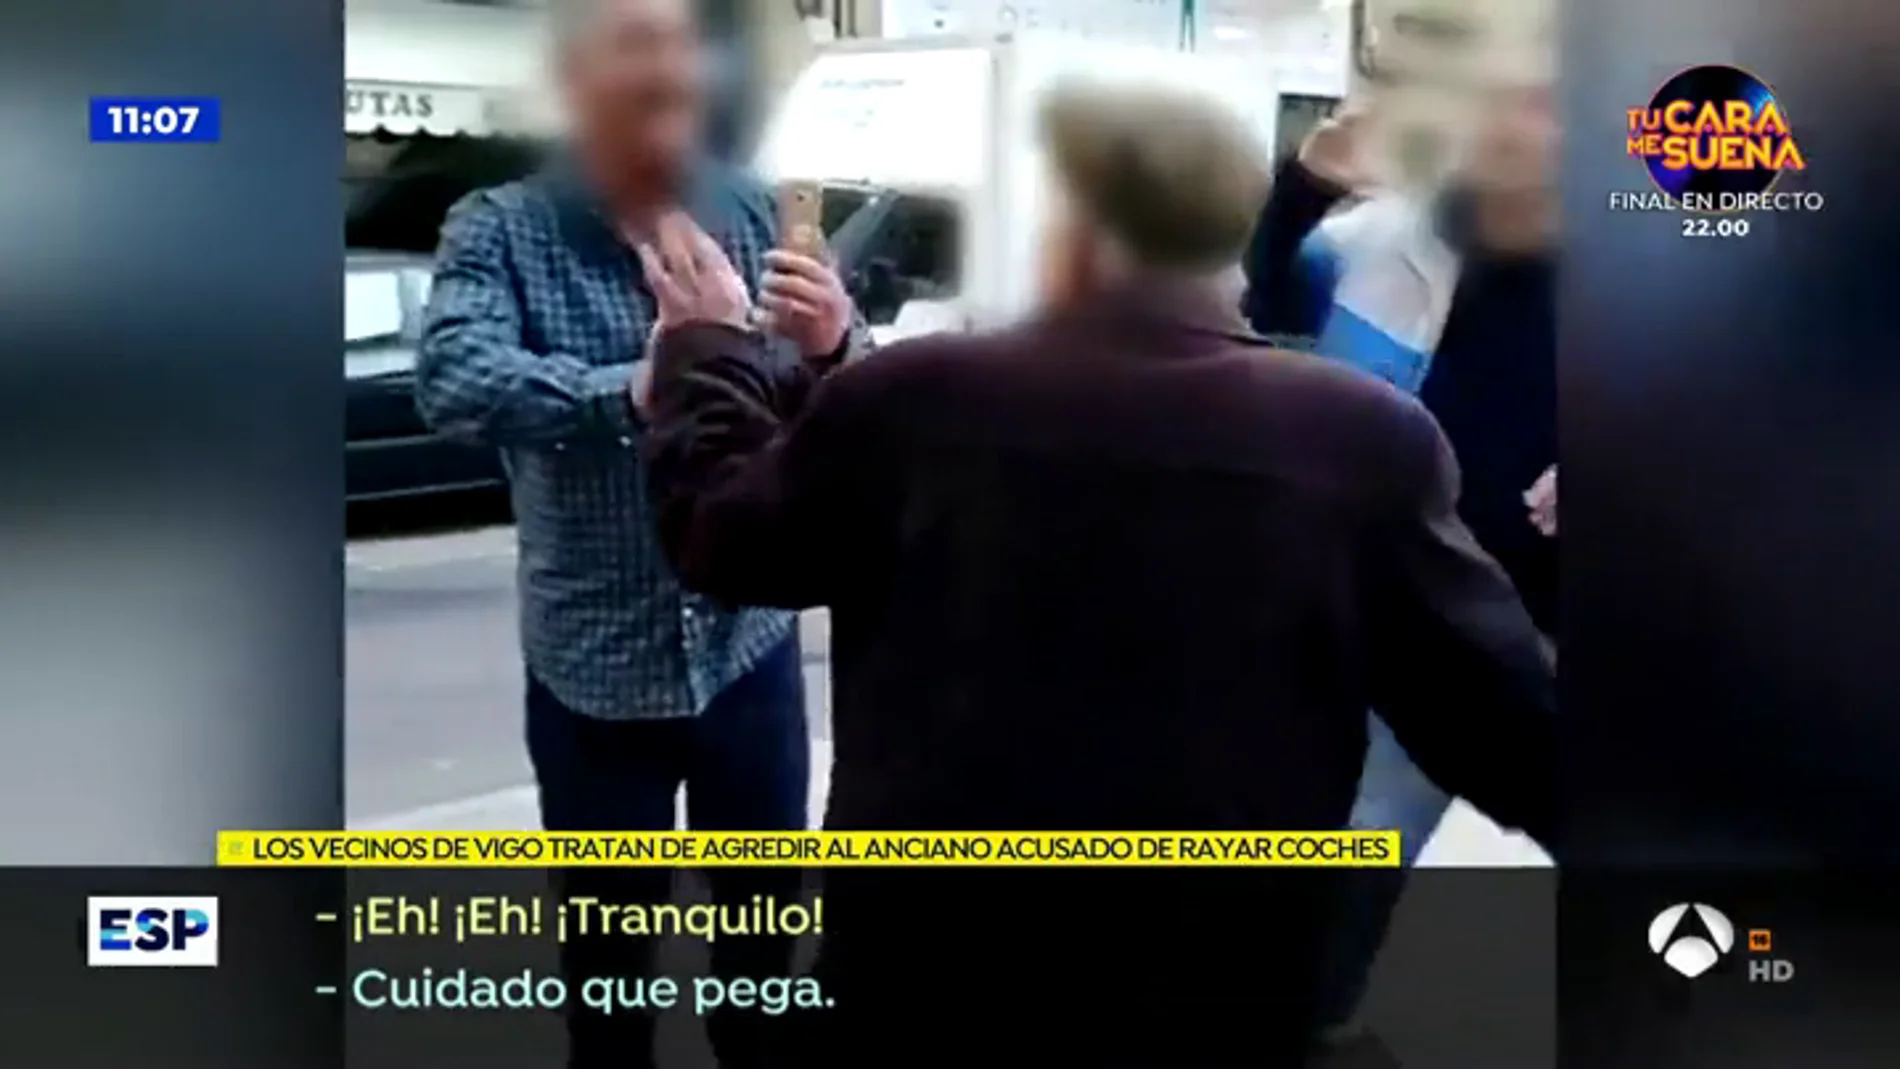 VÍDEO: Acorralan y agreden al anciano 'raya coches' de Vigo: "Tenías que estar muerto, cabrón"